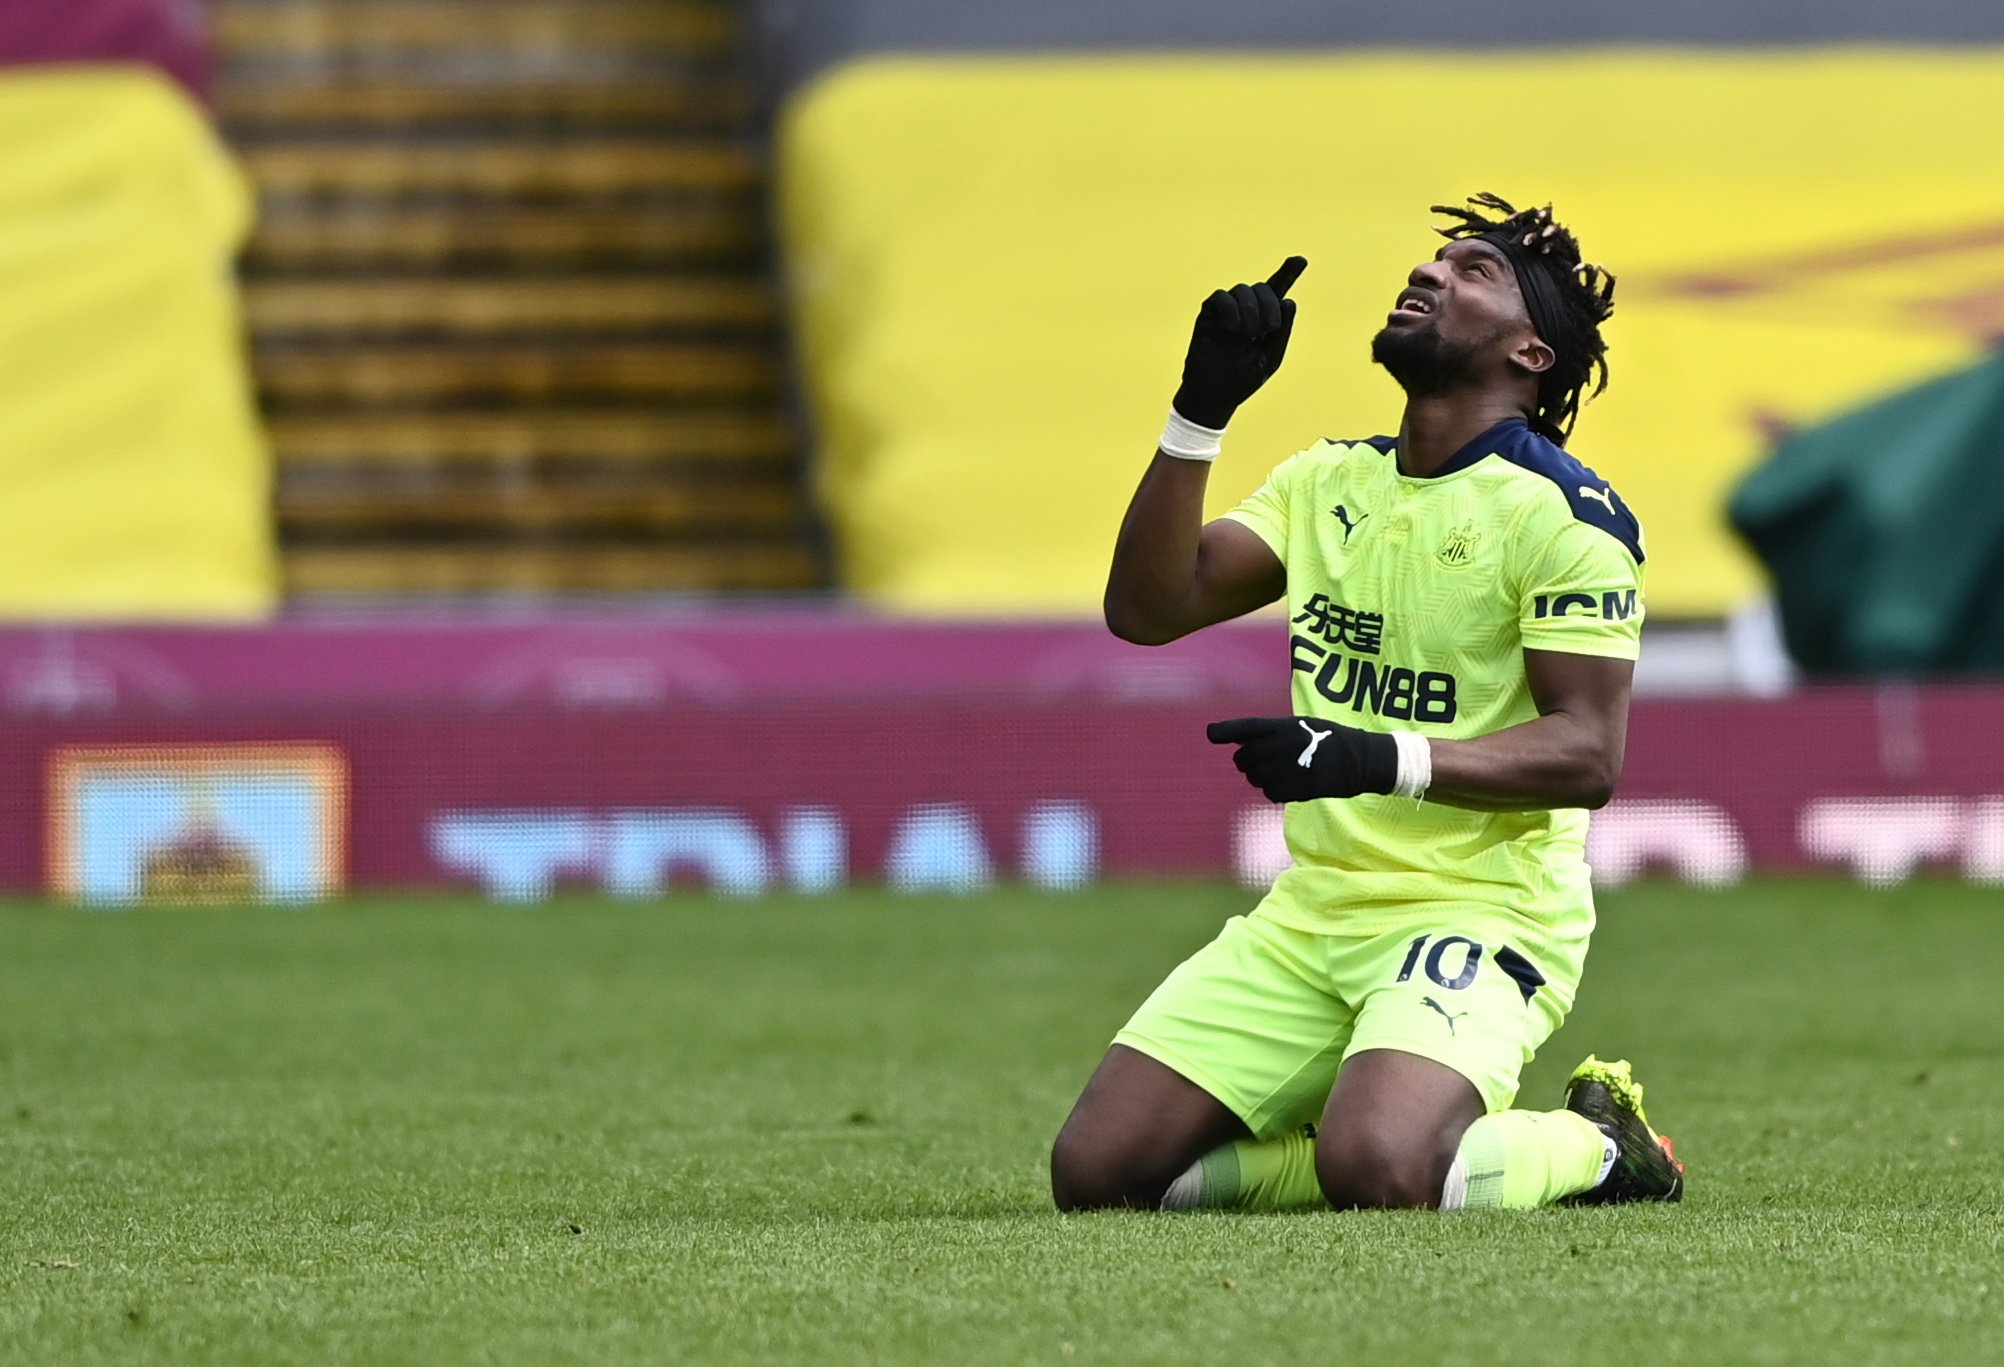 Ο Saint-Maximin εμπνέει κρίσιμη νίκη για το Newcastle στο Burnley